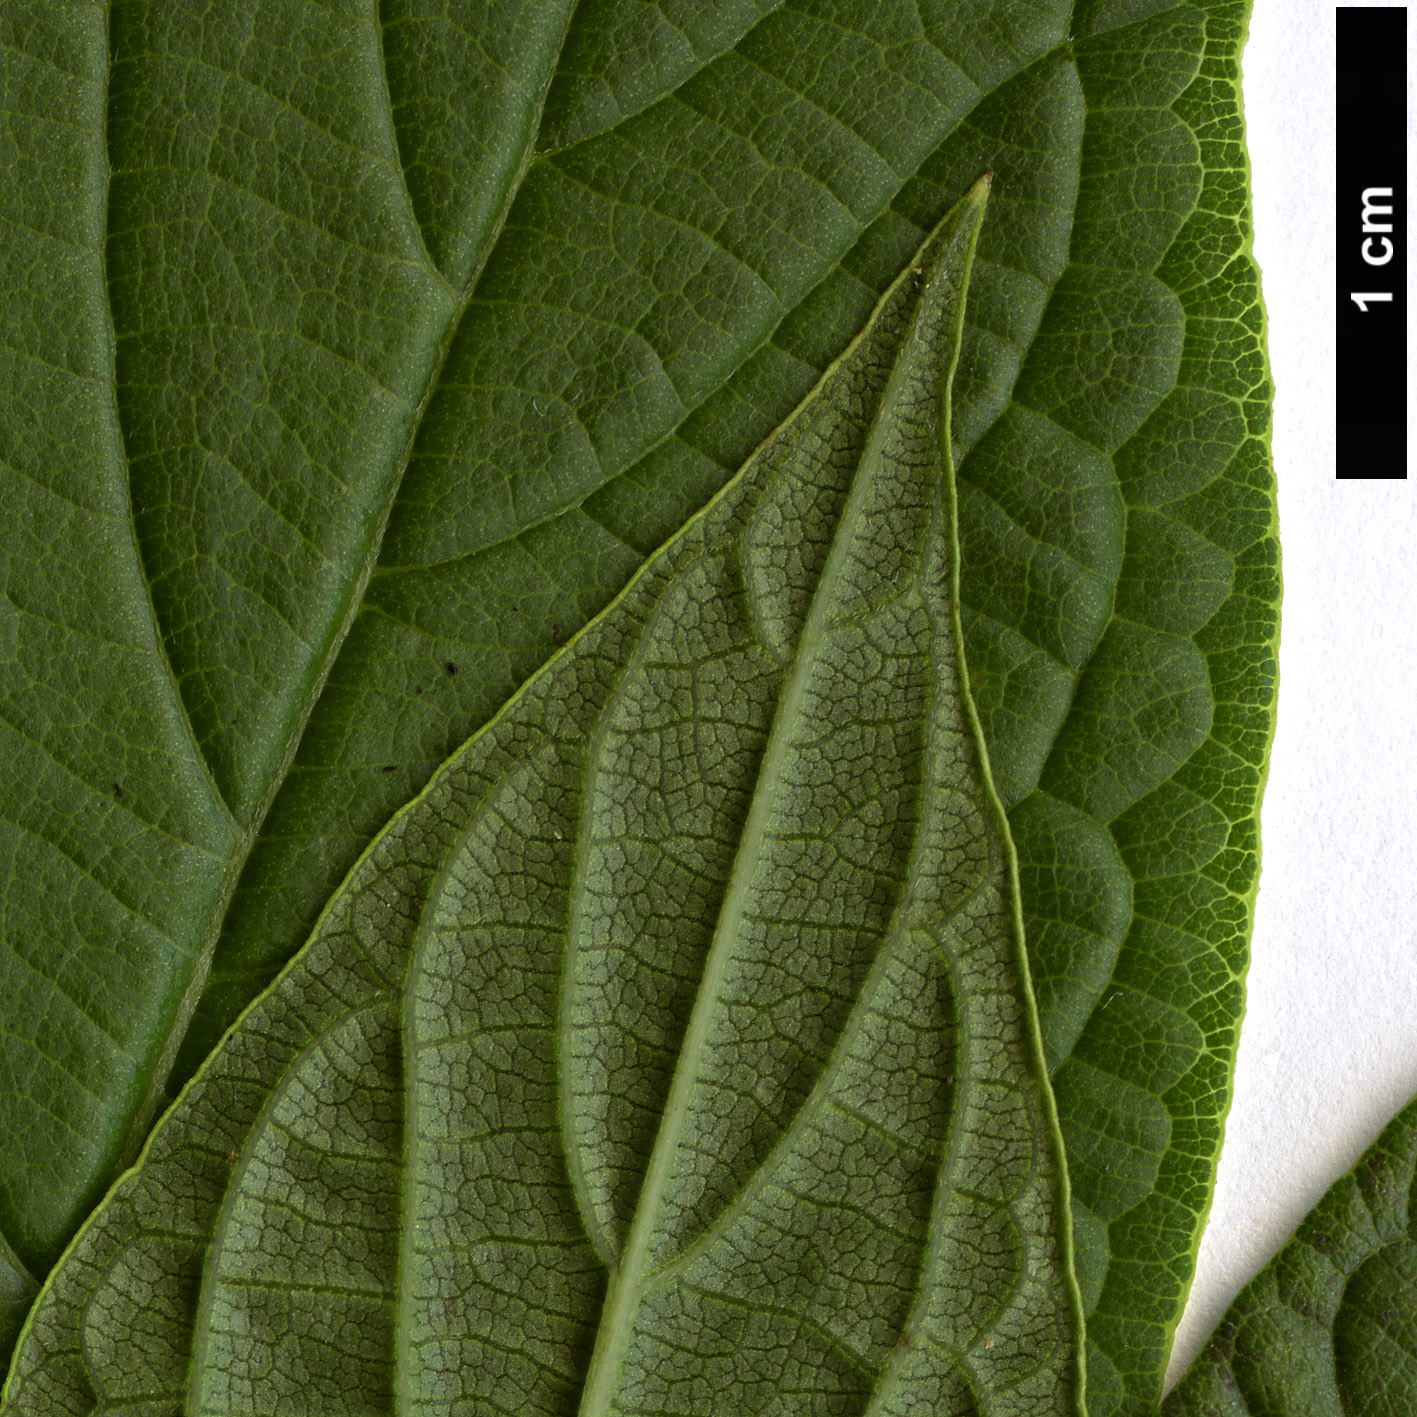 High resolution image: Family: Boraginaceae - Genus: Heliotropium - Taxon: arborescens